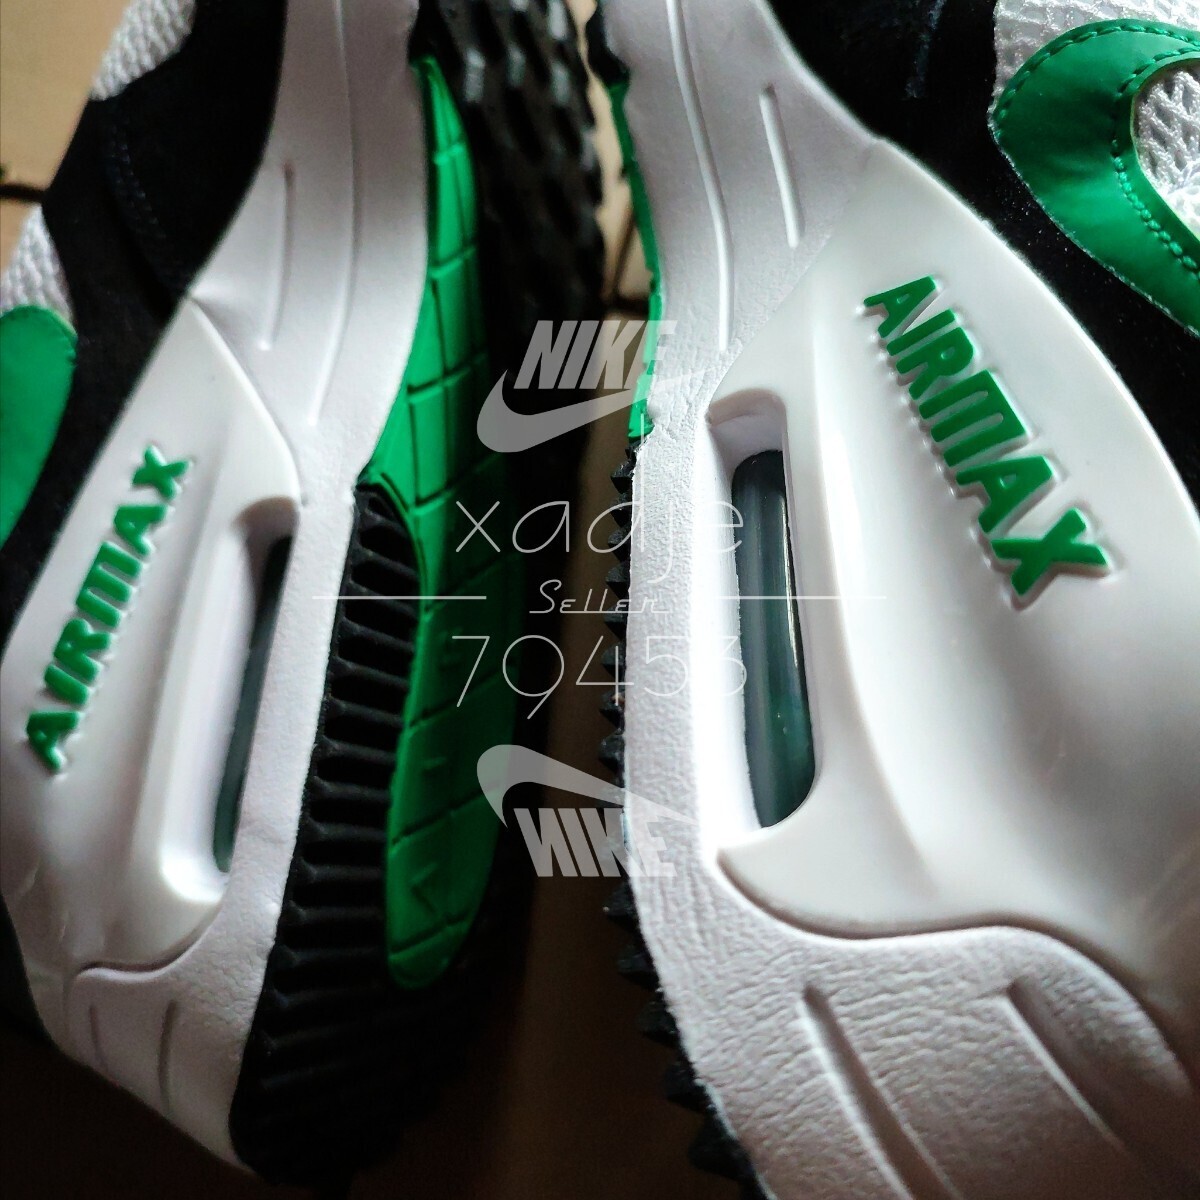  новый товар стандартный товар NIKE Nike AIR MAX SYSTEM air max система белый белый зеленый чёрный черный 27.5cm US9.5 с коробкой MOVE TO ZERO